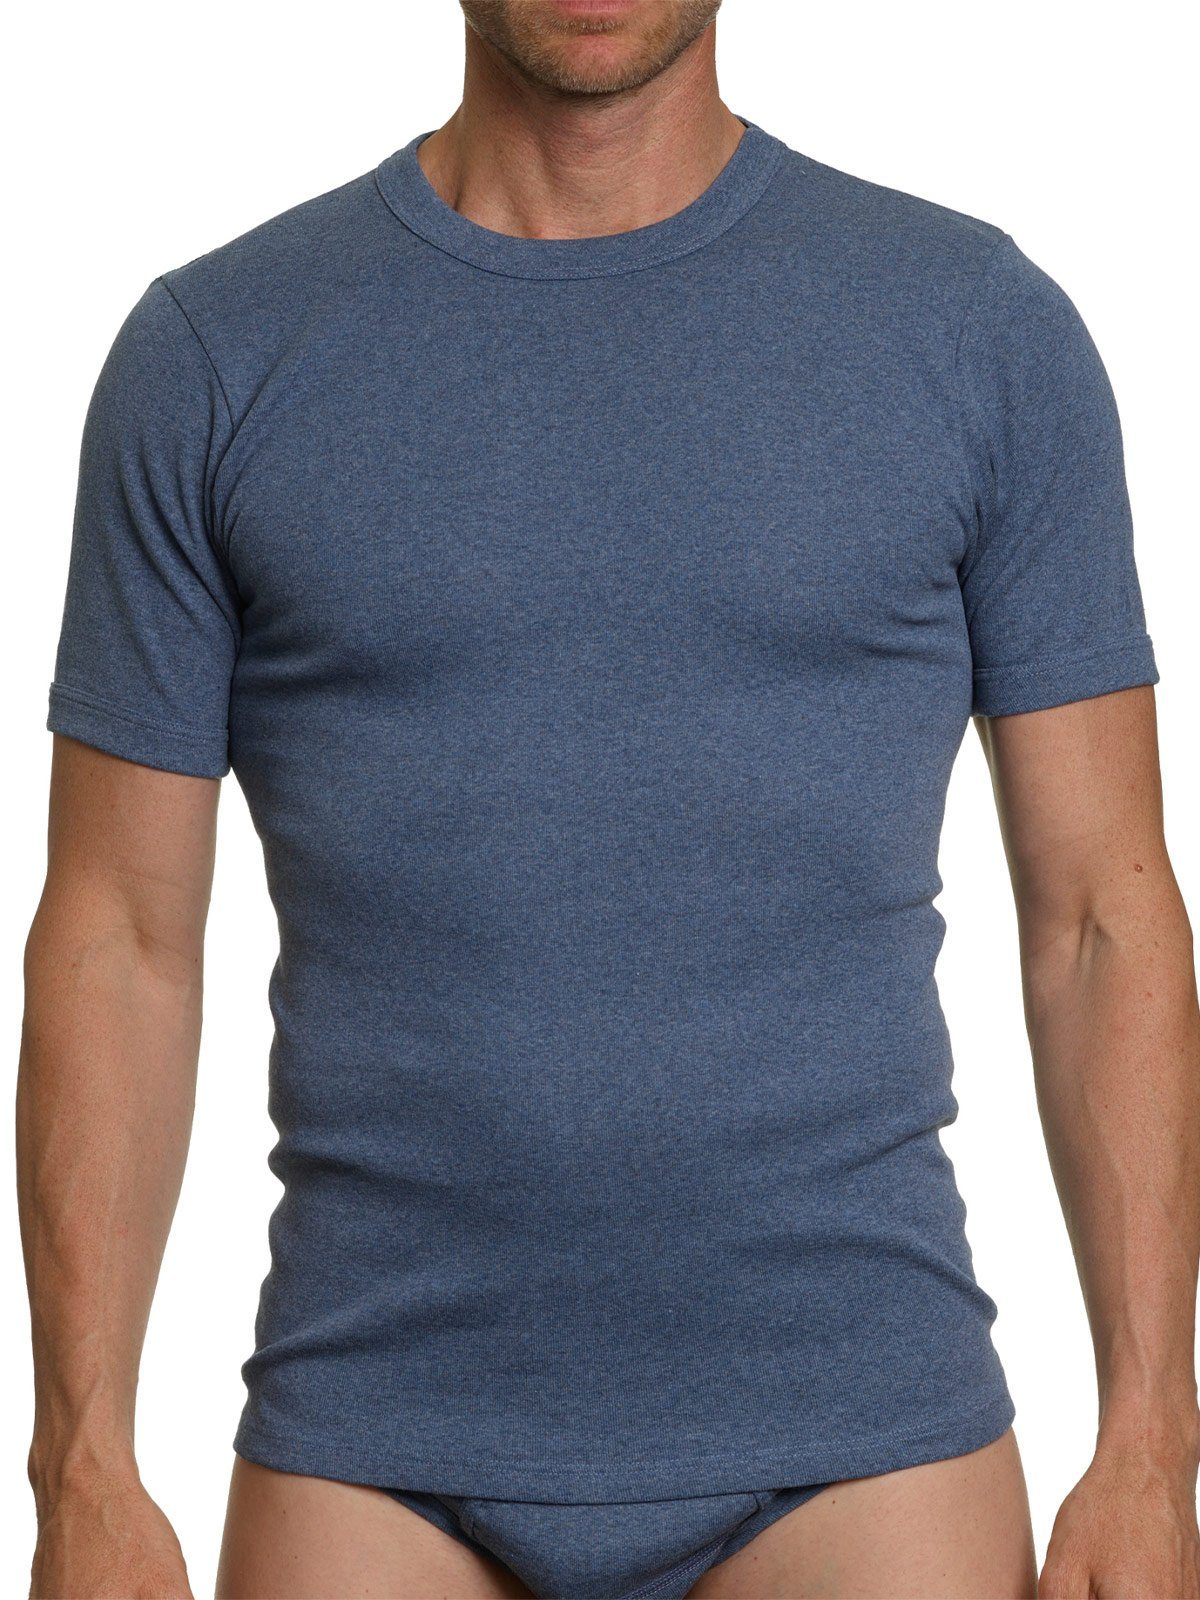 KUMPF Unterziehshirt 2er Sparpack hohe kiesel-melange T-Shirt Markenqualität blau-melange 2-St) Workerwear Herren (Spar-Set